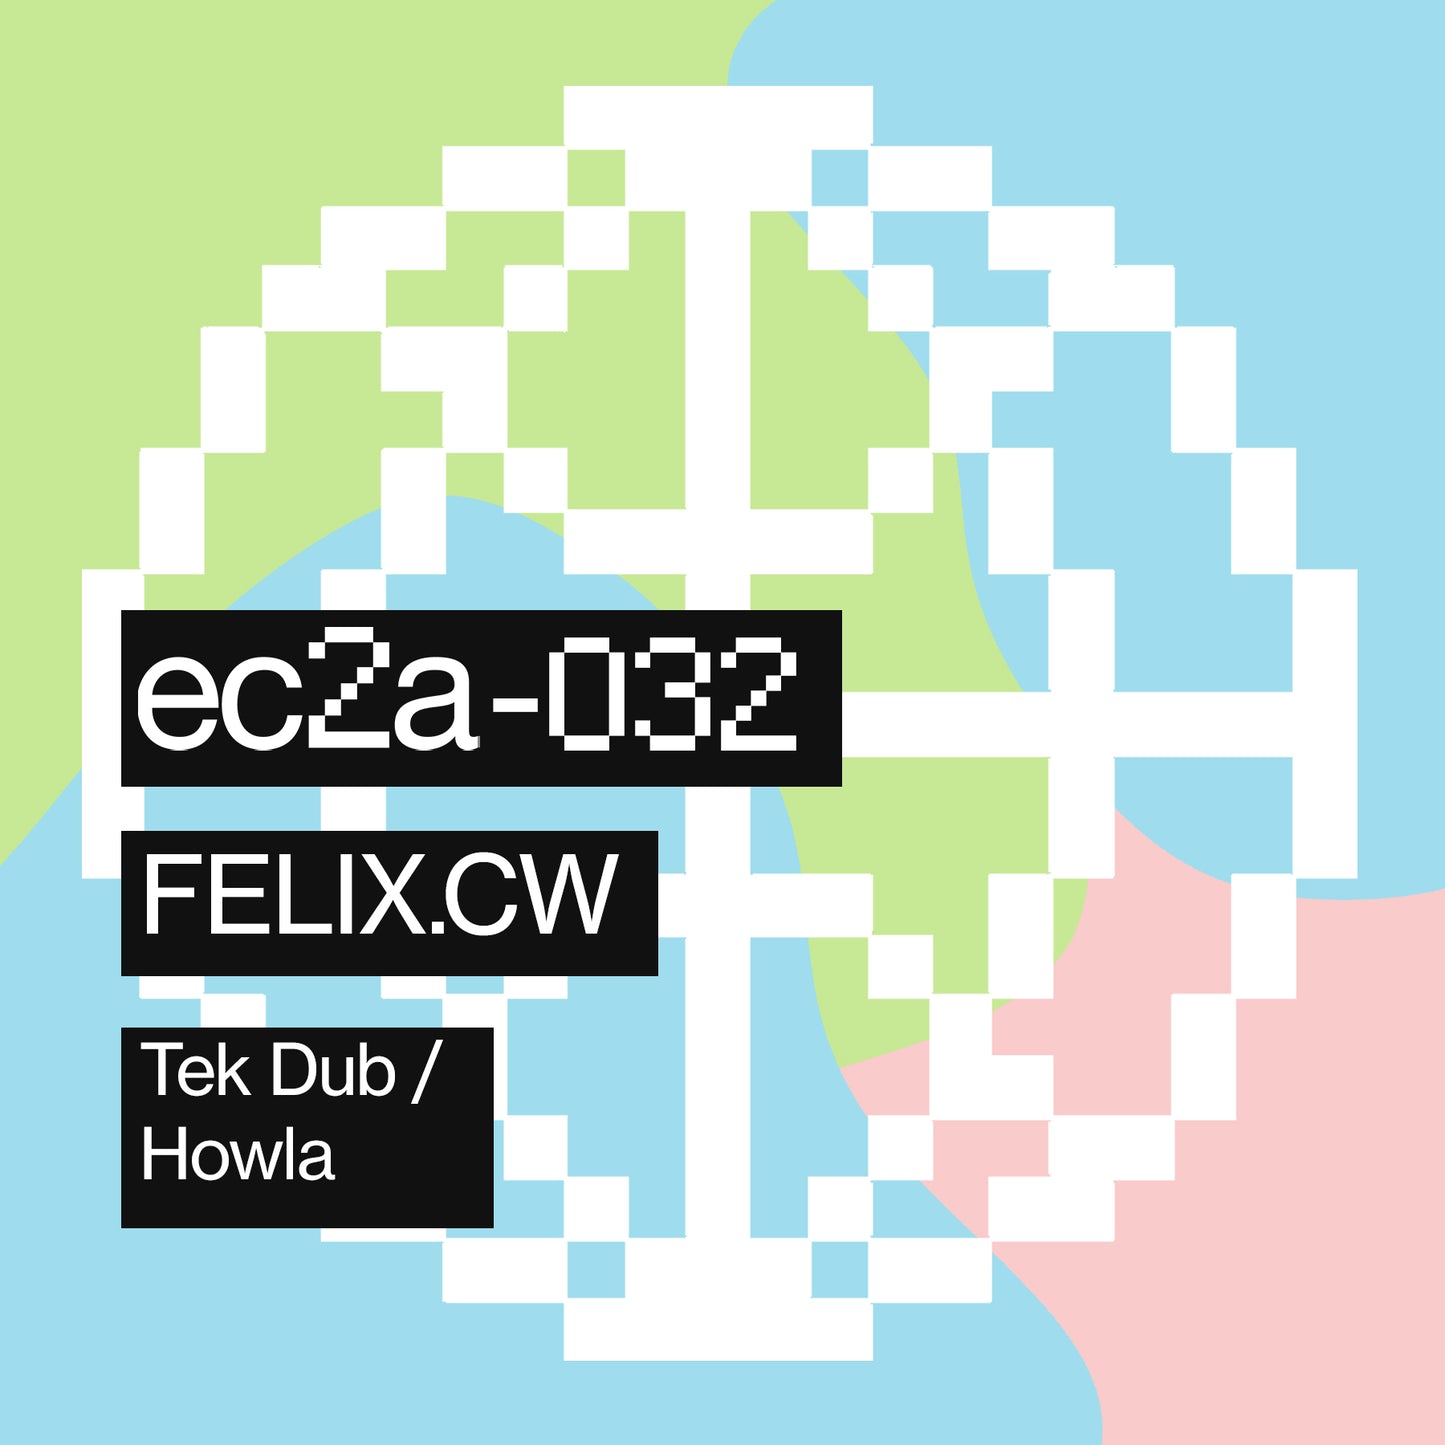 [EC2A-032] FELIXCW